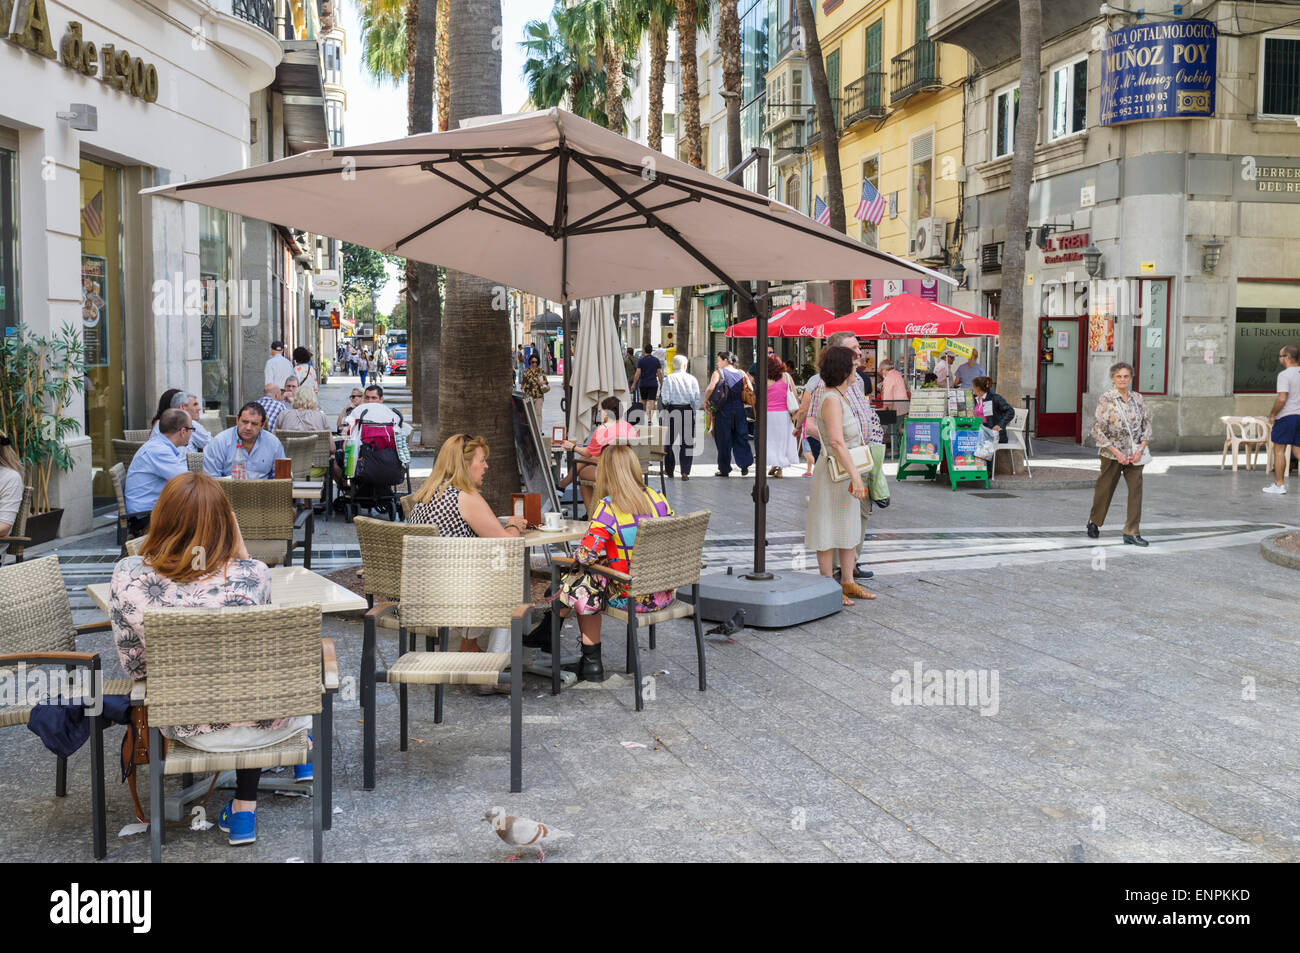 Malaga, Spanien. Menschen auf eine Café-Bar mit Terrasse in Puerta del Mar Straße, alte Stadt Malaga, Andalusien, Spanien Stockfoto